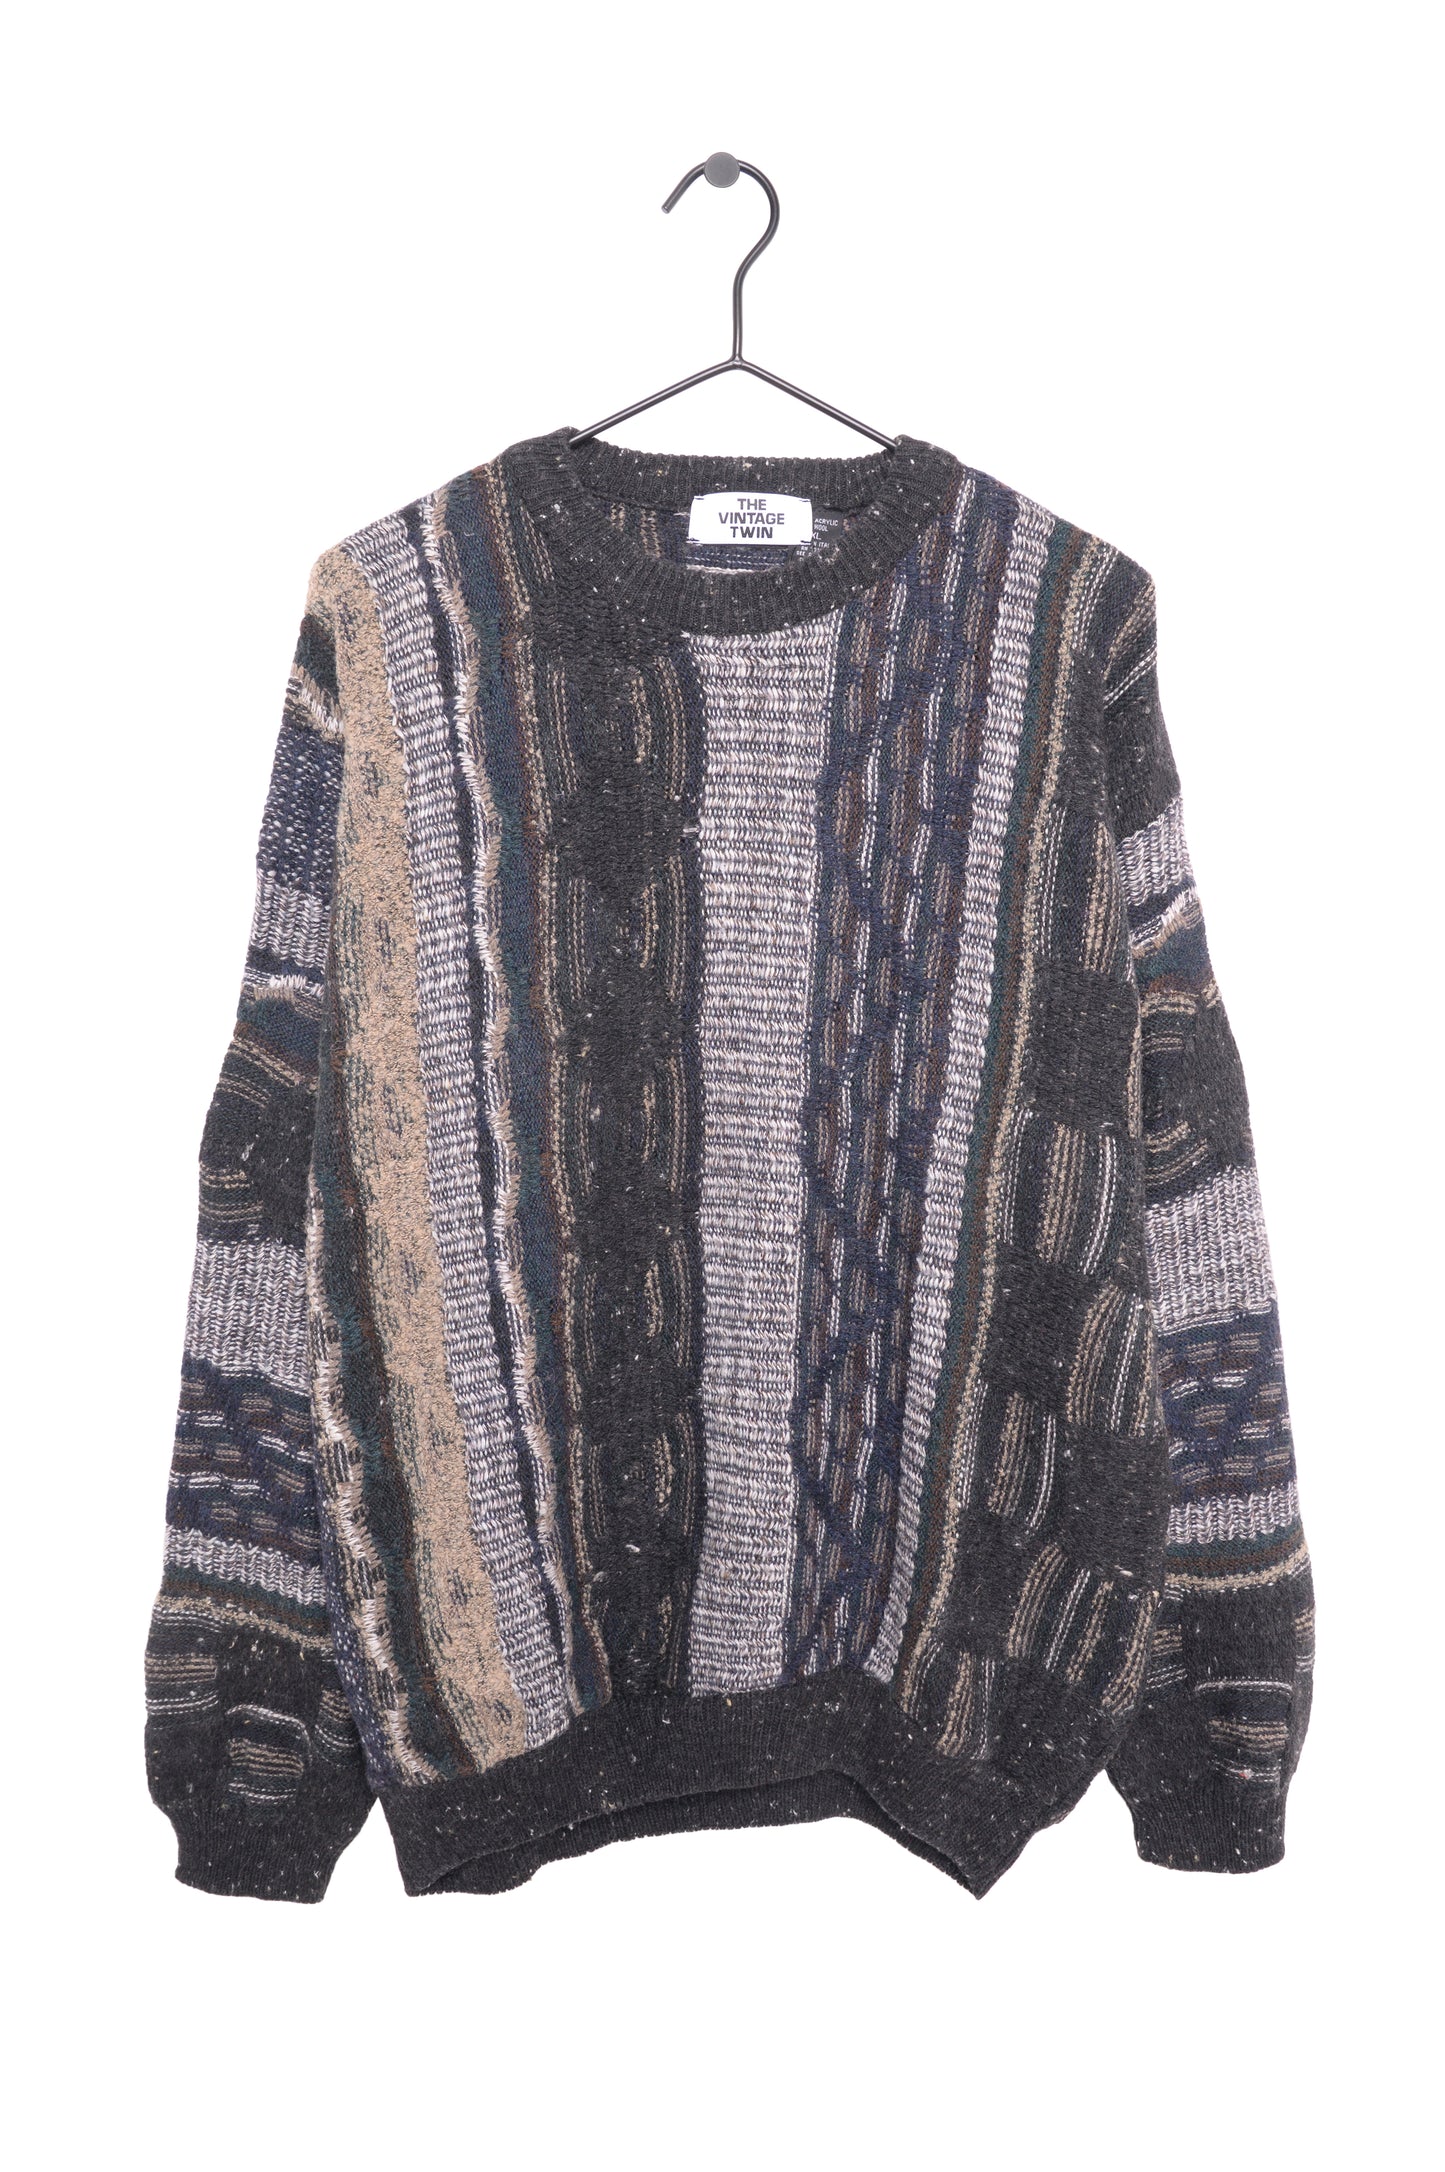 1990s Italian Textured Sweater